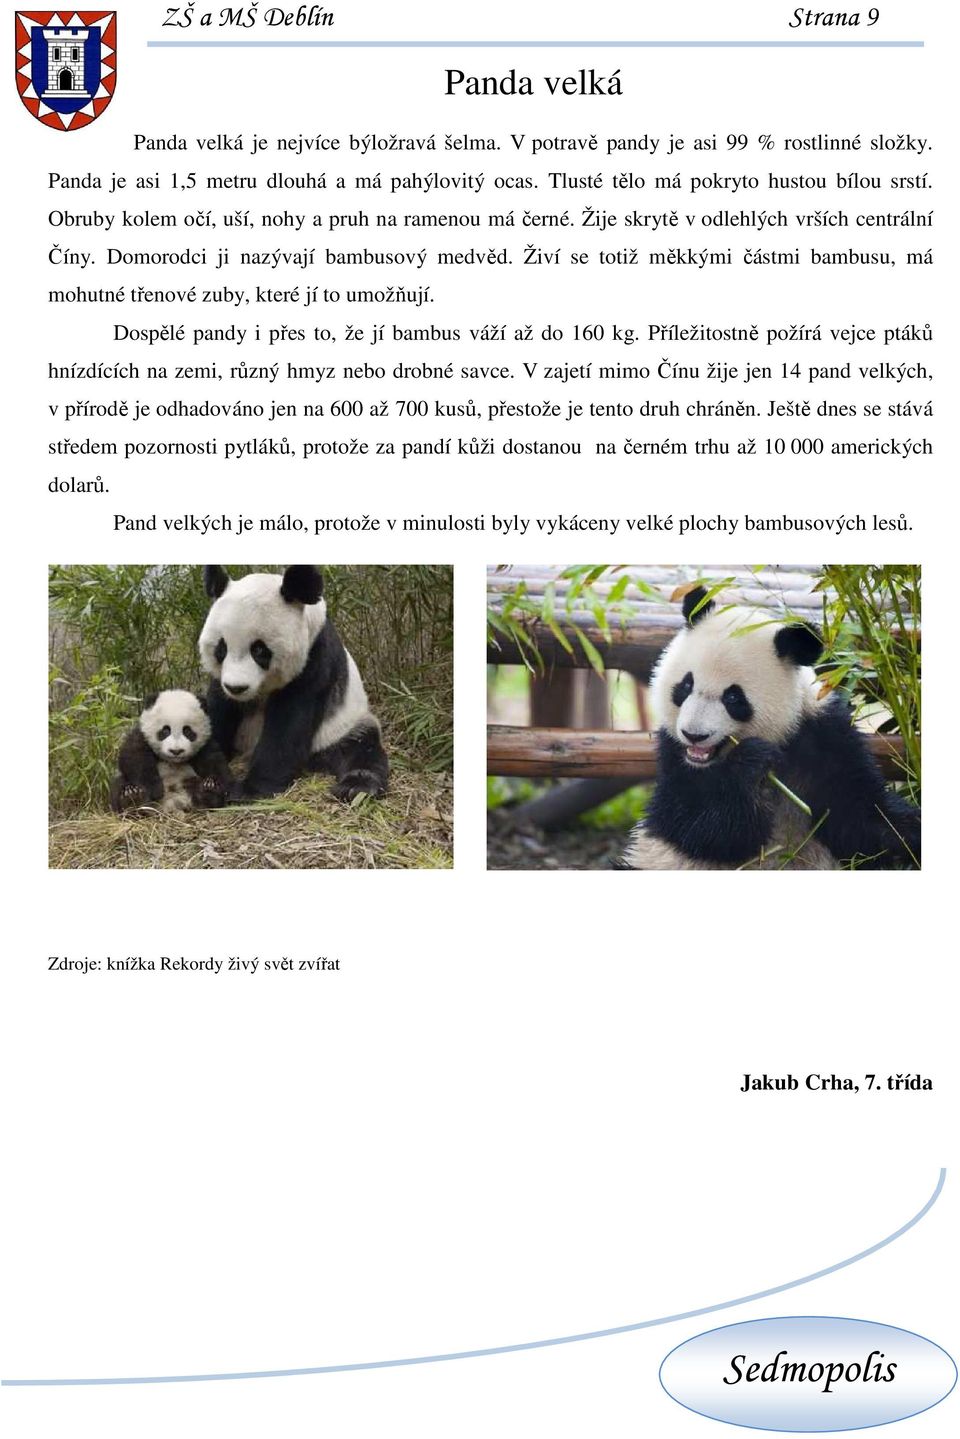 Živí se totiž měkkými částmi bambusu, má mohutné třenové zuby, které jí to umožňují. Dospělé pandy i přes to, že jí bambus váží až do 160 kg.